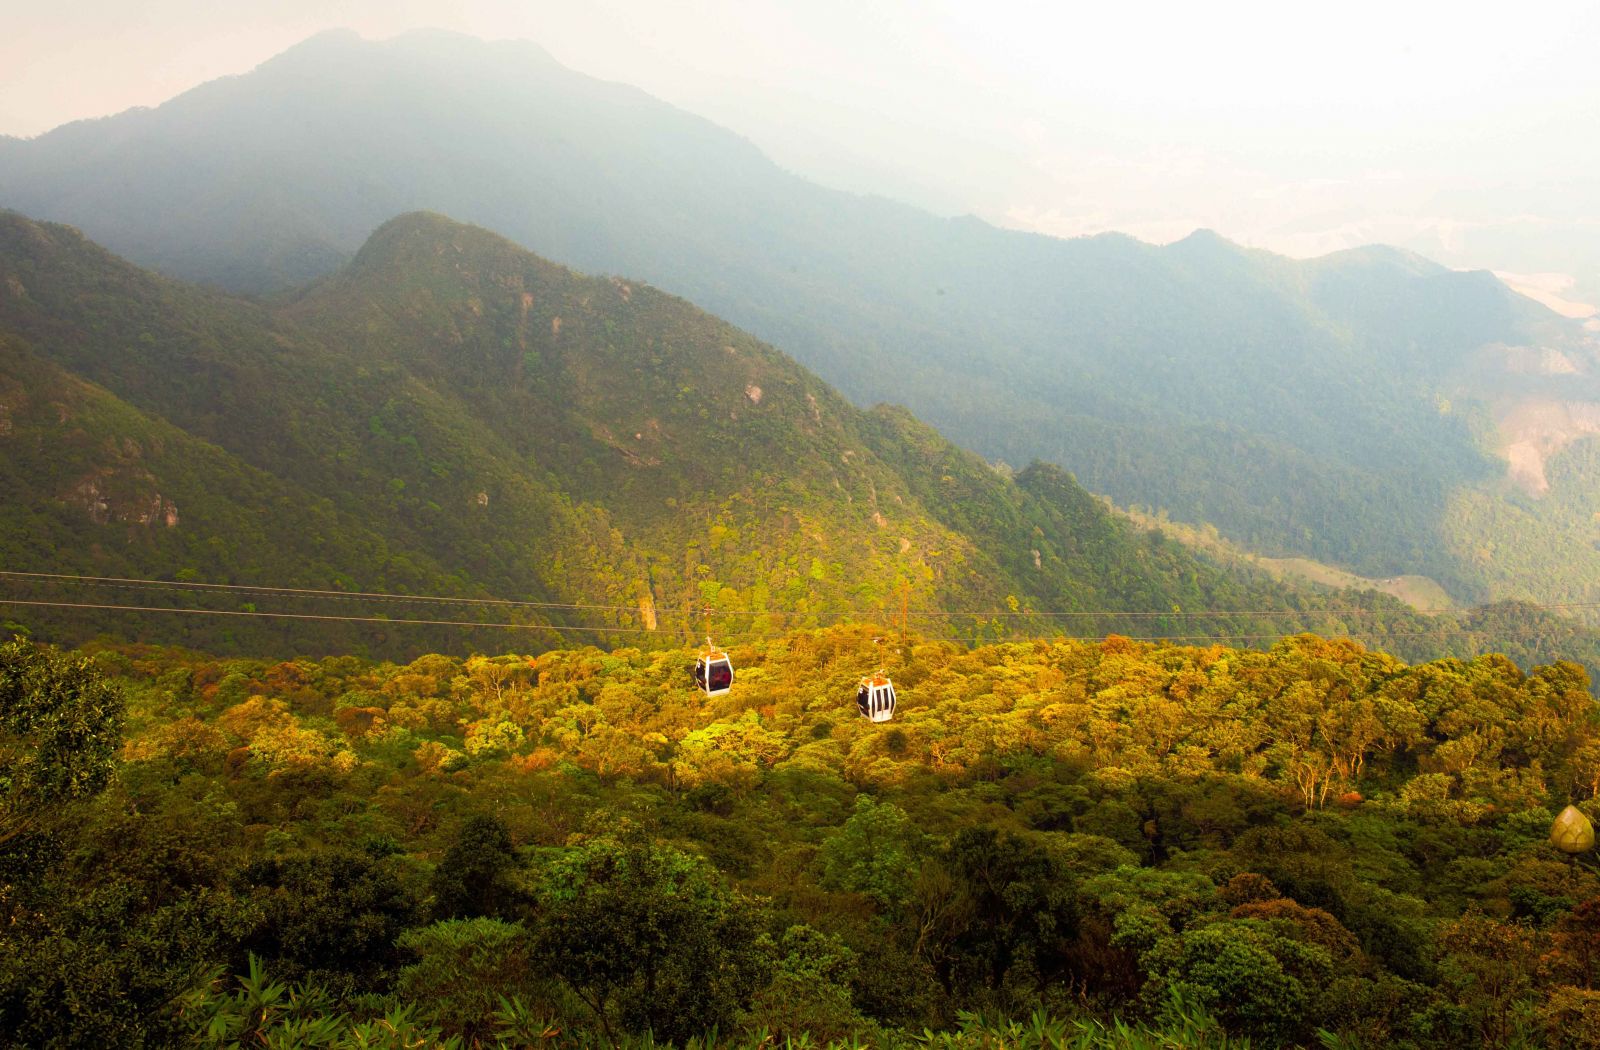 Với hệ thống cáp treo Yên Tử, từ trên cao, du khách có thể ngắm nhìn toàn bộ cảnh quan Yên Tử với những công trình chùa, am, tháp cổ kính nằm thấp thoáng ẩn mình trong những cánh rừng nguyên sinh xanh ngút ngàn